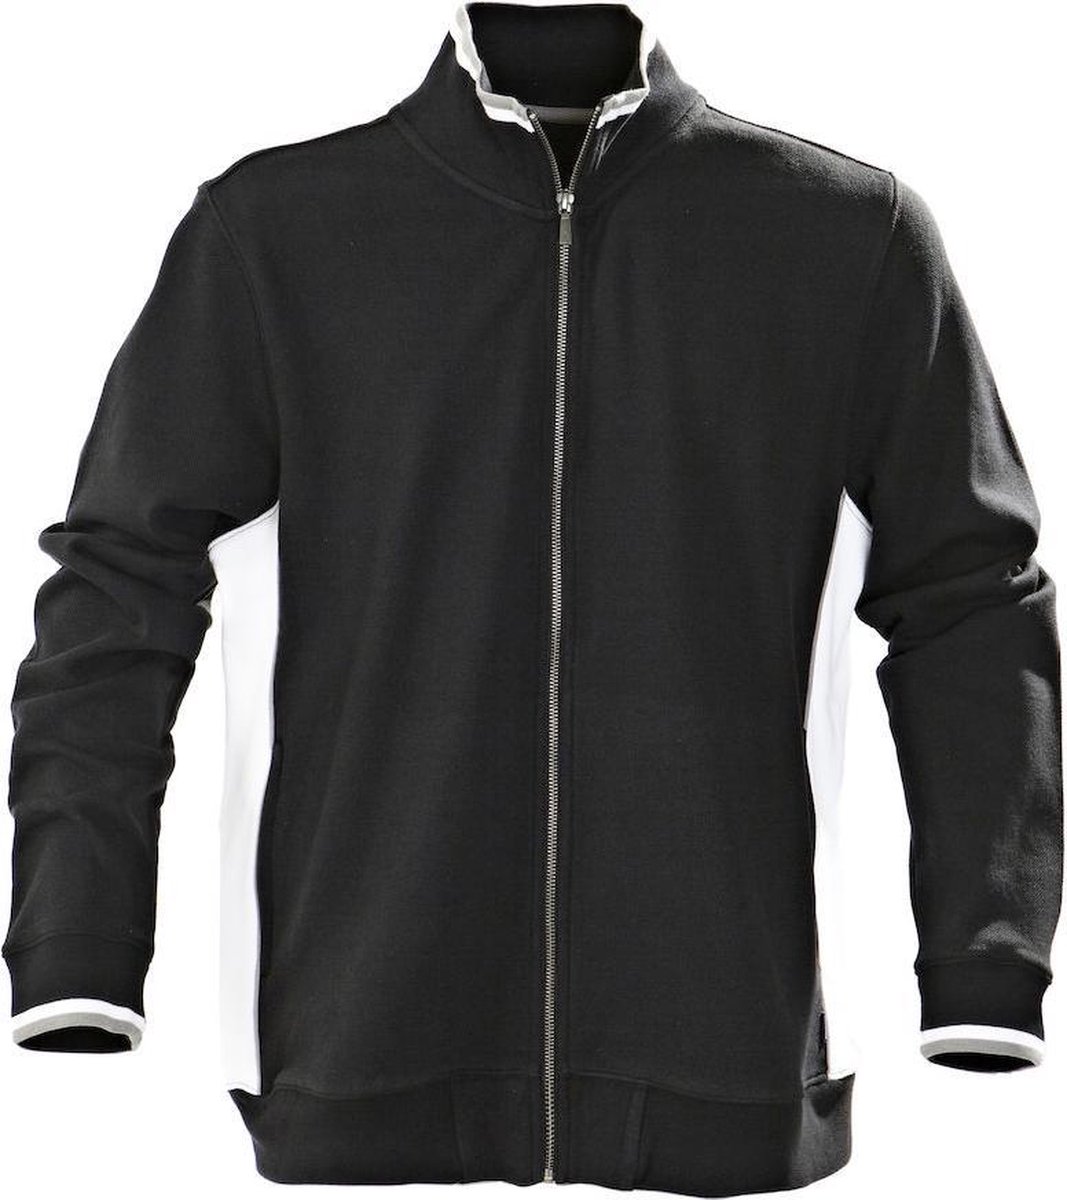 Harvest Atlanta Piqué Jacket Vest Zwart 2132018 - Maat 3XL